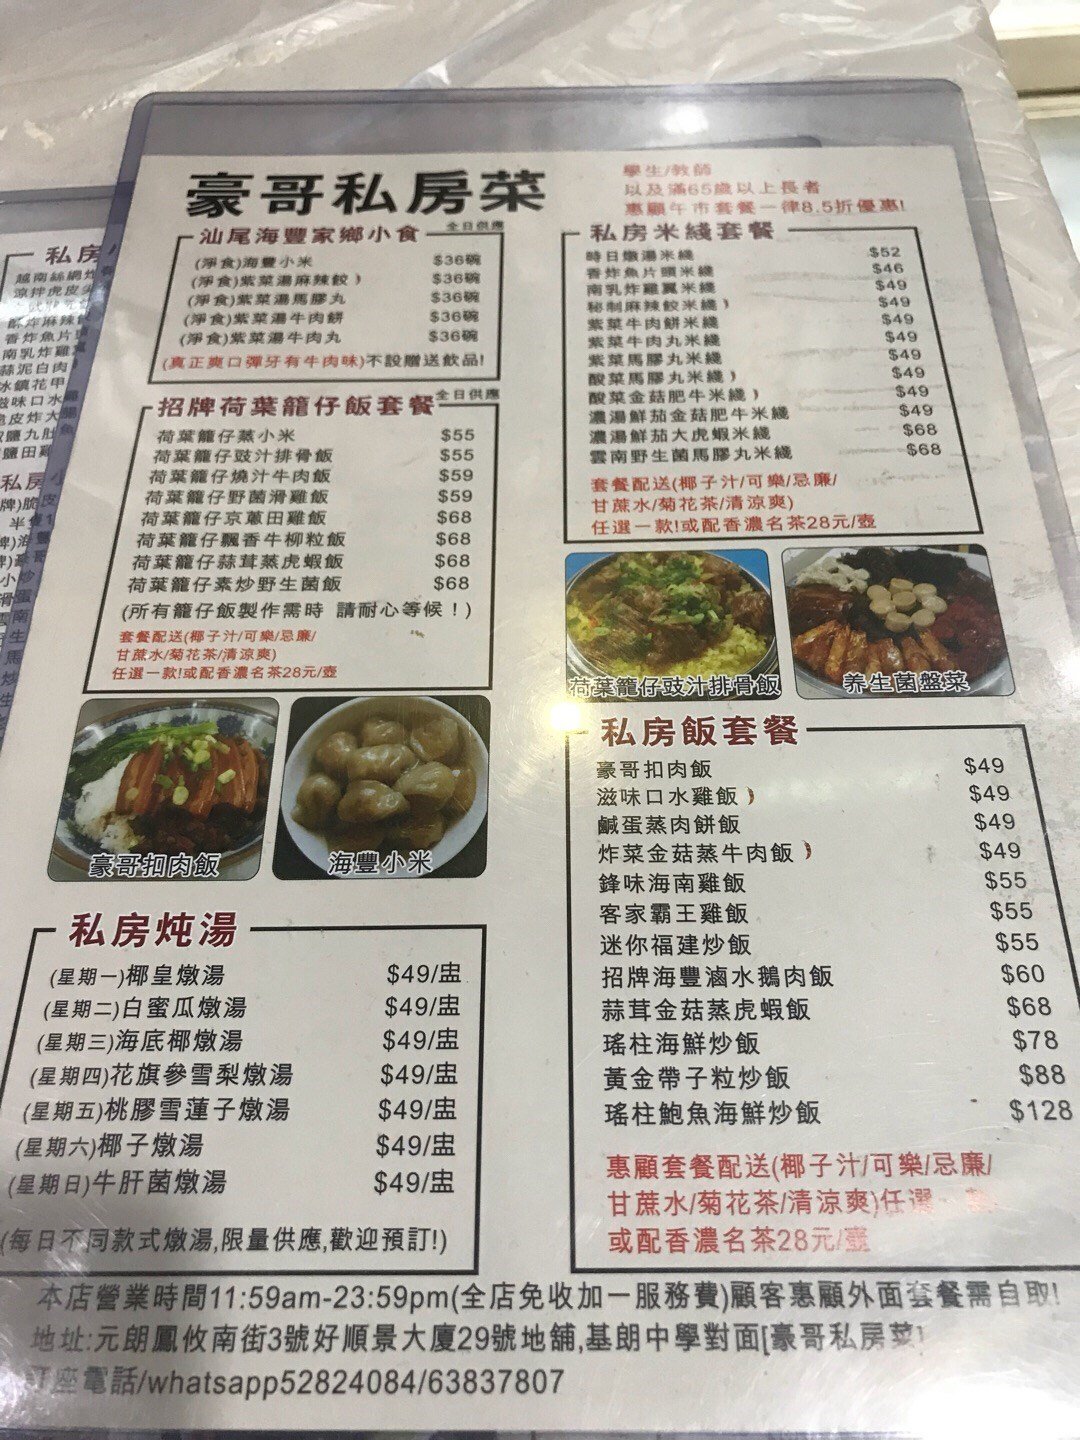 粤菜招牌菜图片和菜牌图片